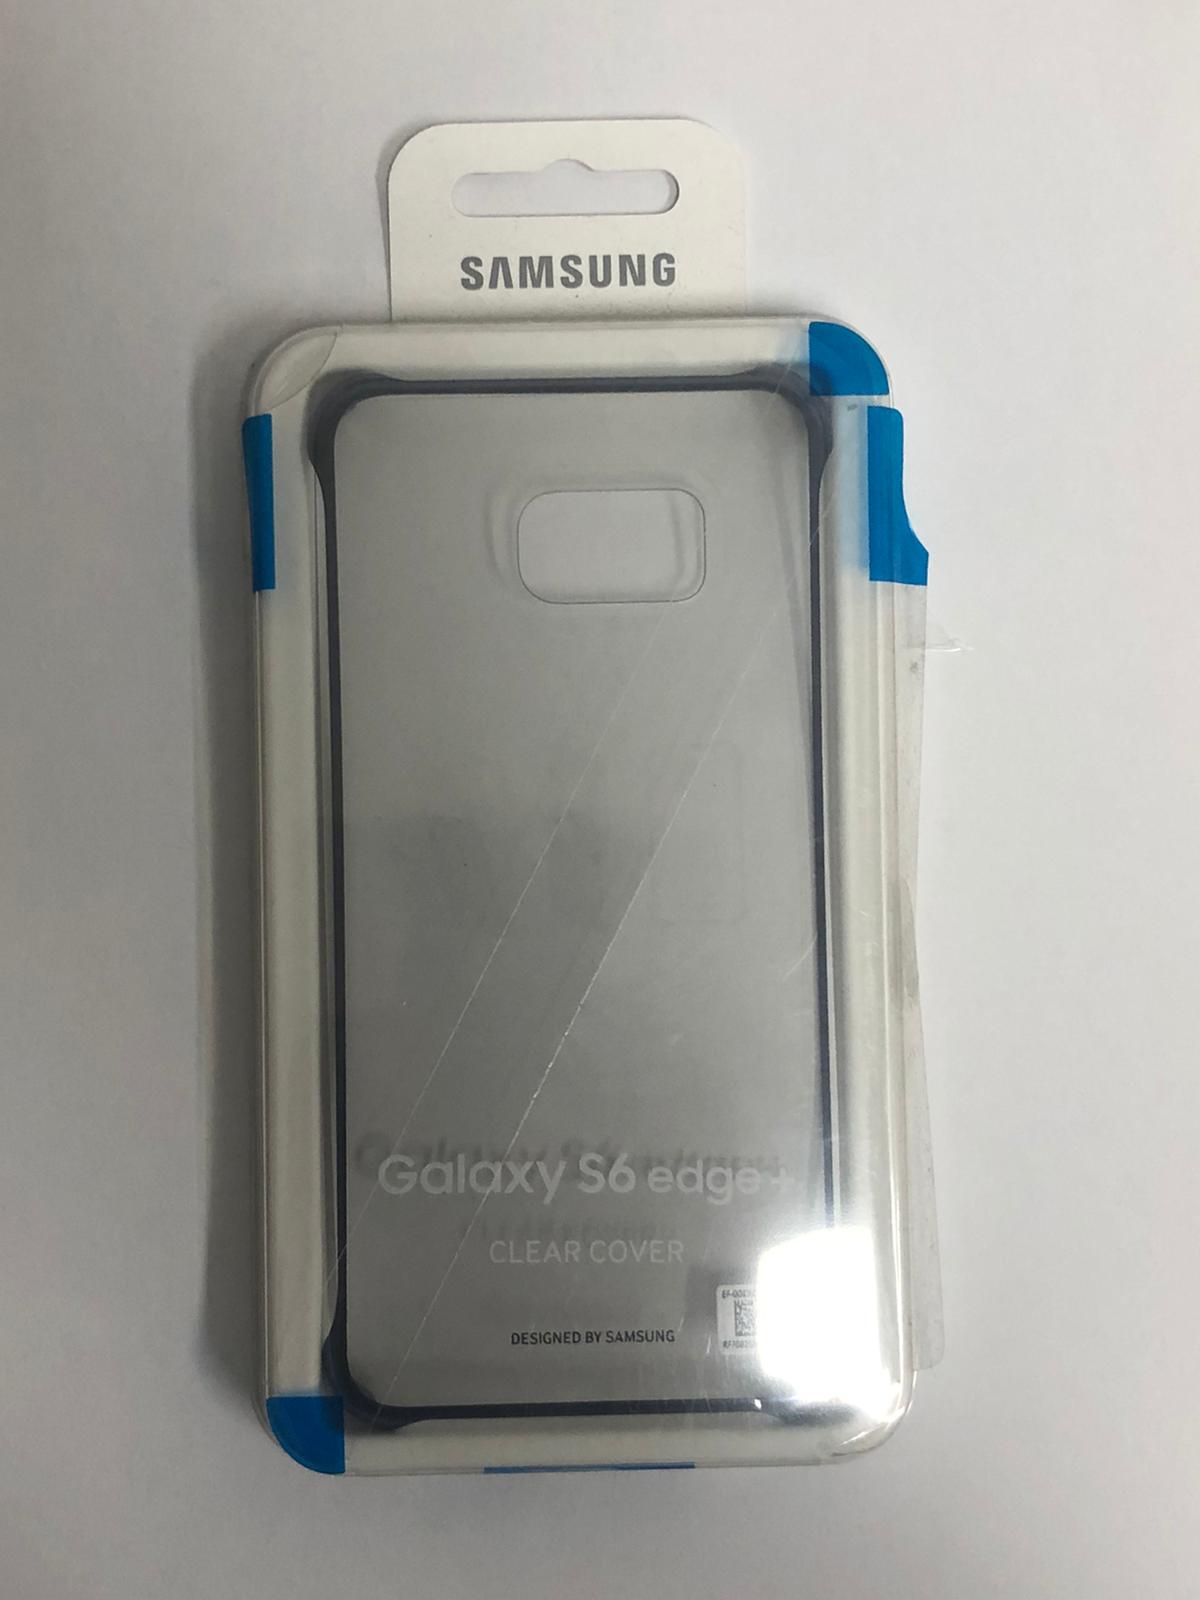 Samsung Galaxy S6 edge+ Clear Cover - Blue Black